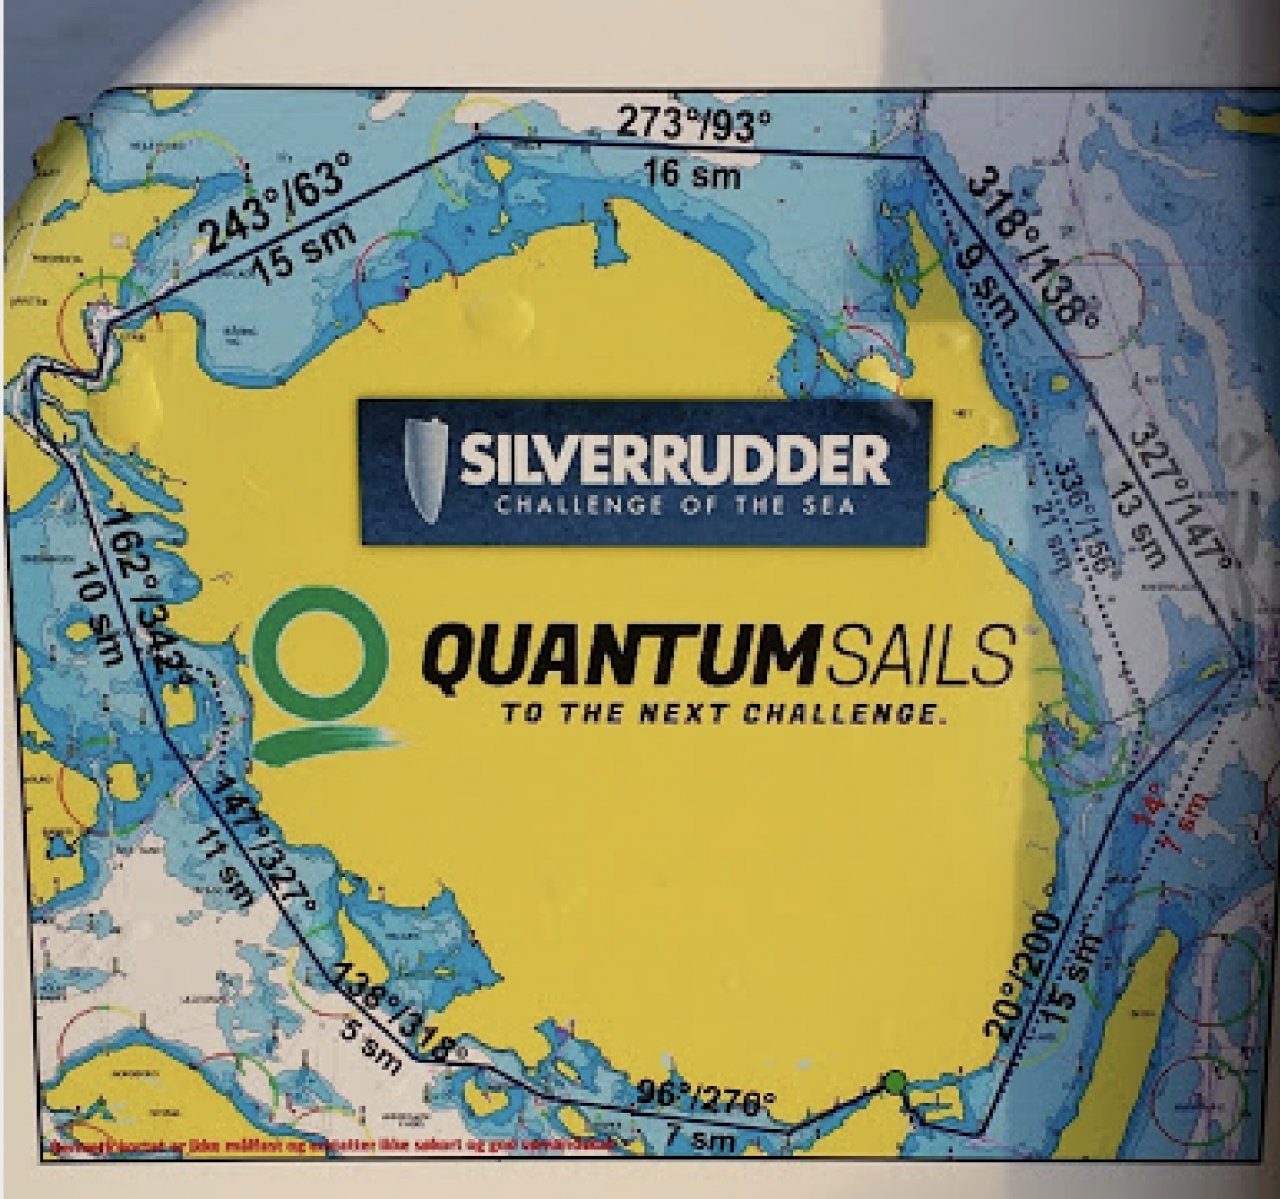 silverrudder 2021, single handed offshore race